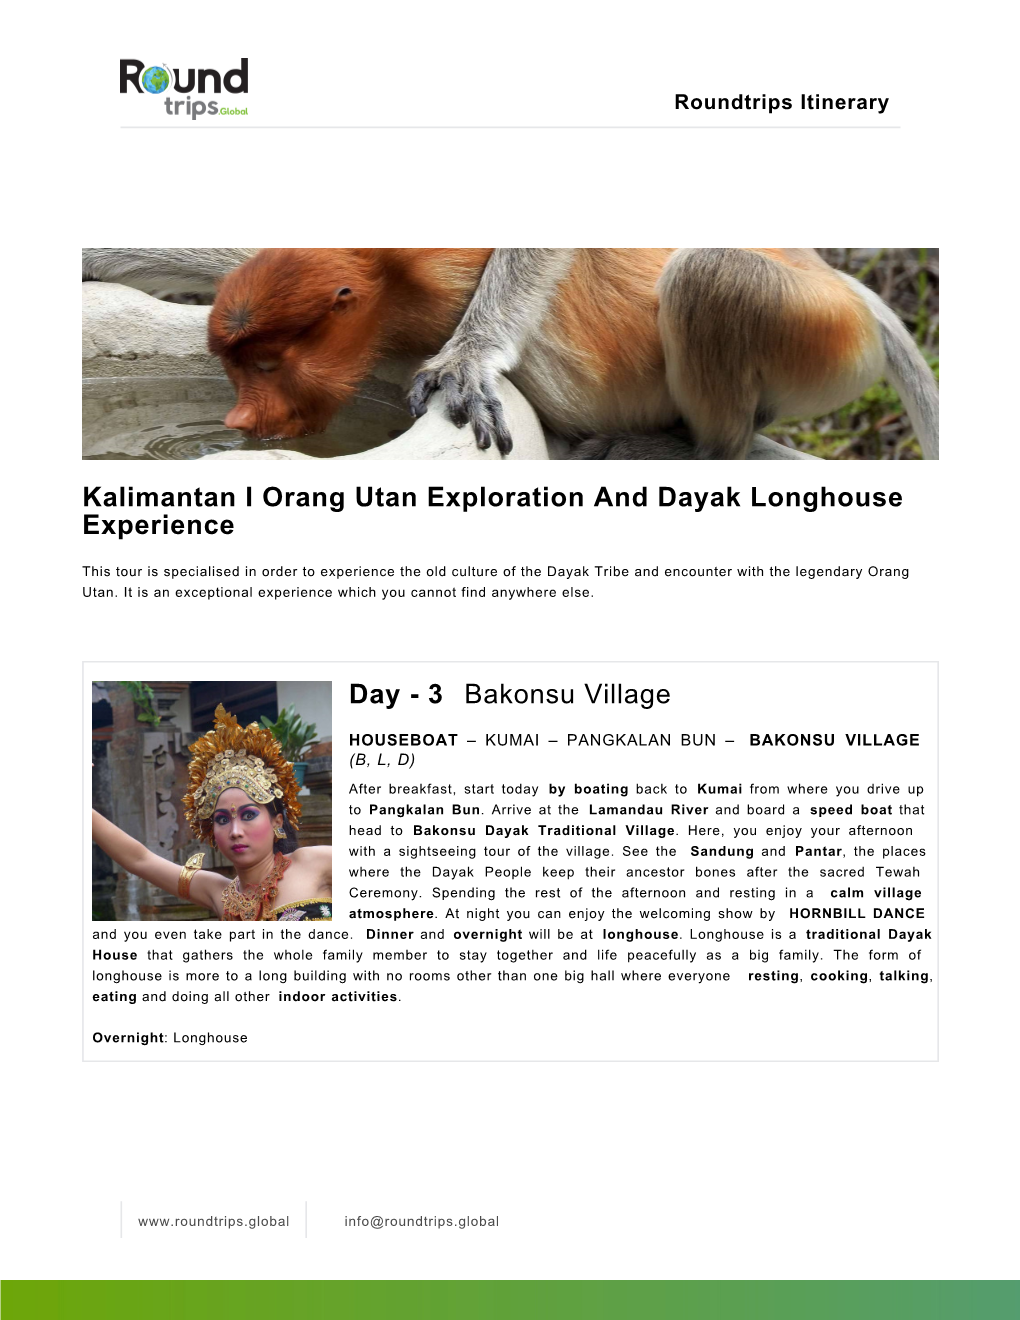 Kalimantan I Orang Utan Exploration and Dayak Longhouse Experience